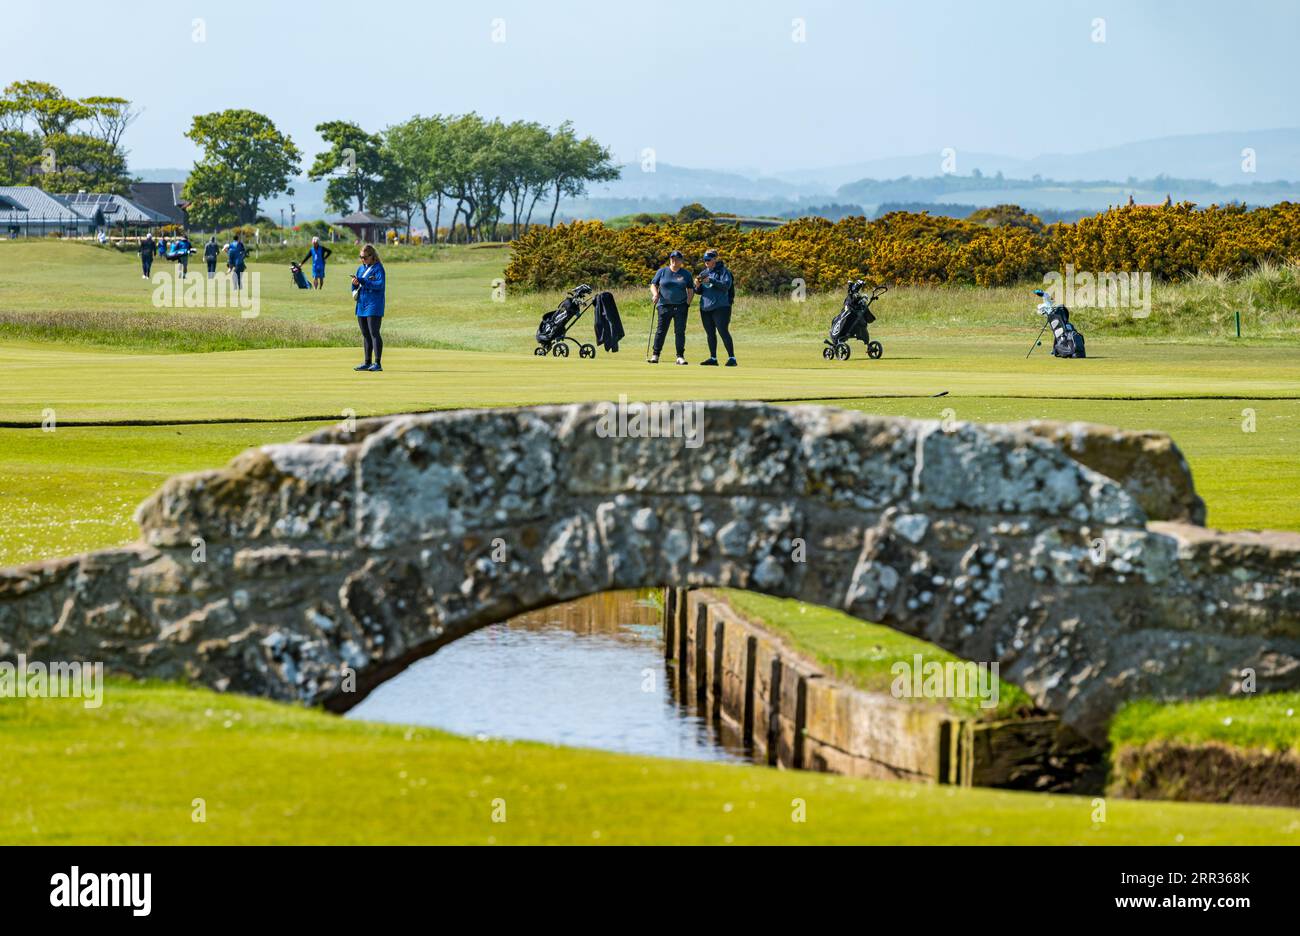 Swilcan Bridge, The Links, avec des joueurs de golf sur le Old course, St Andrews, Fife, Écosse, Royaume-Uni Banque D'Images